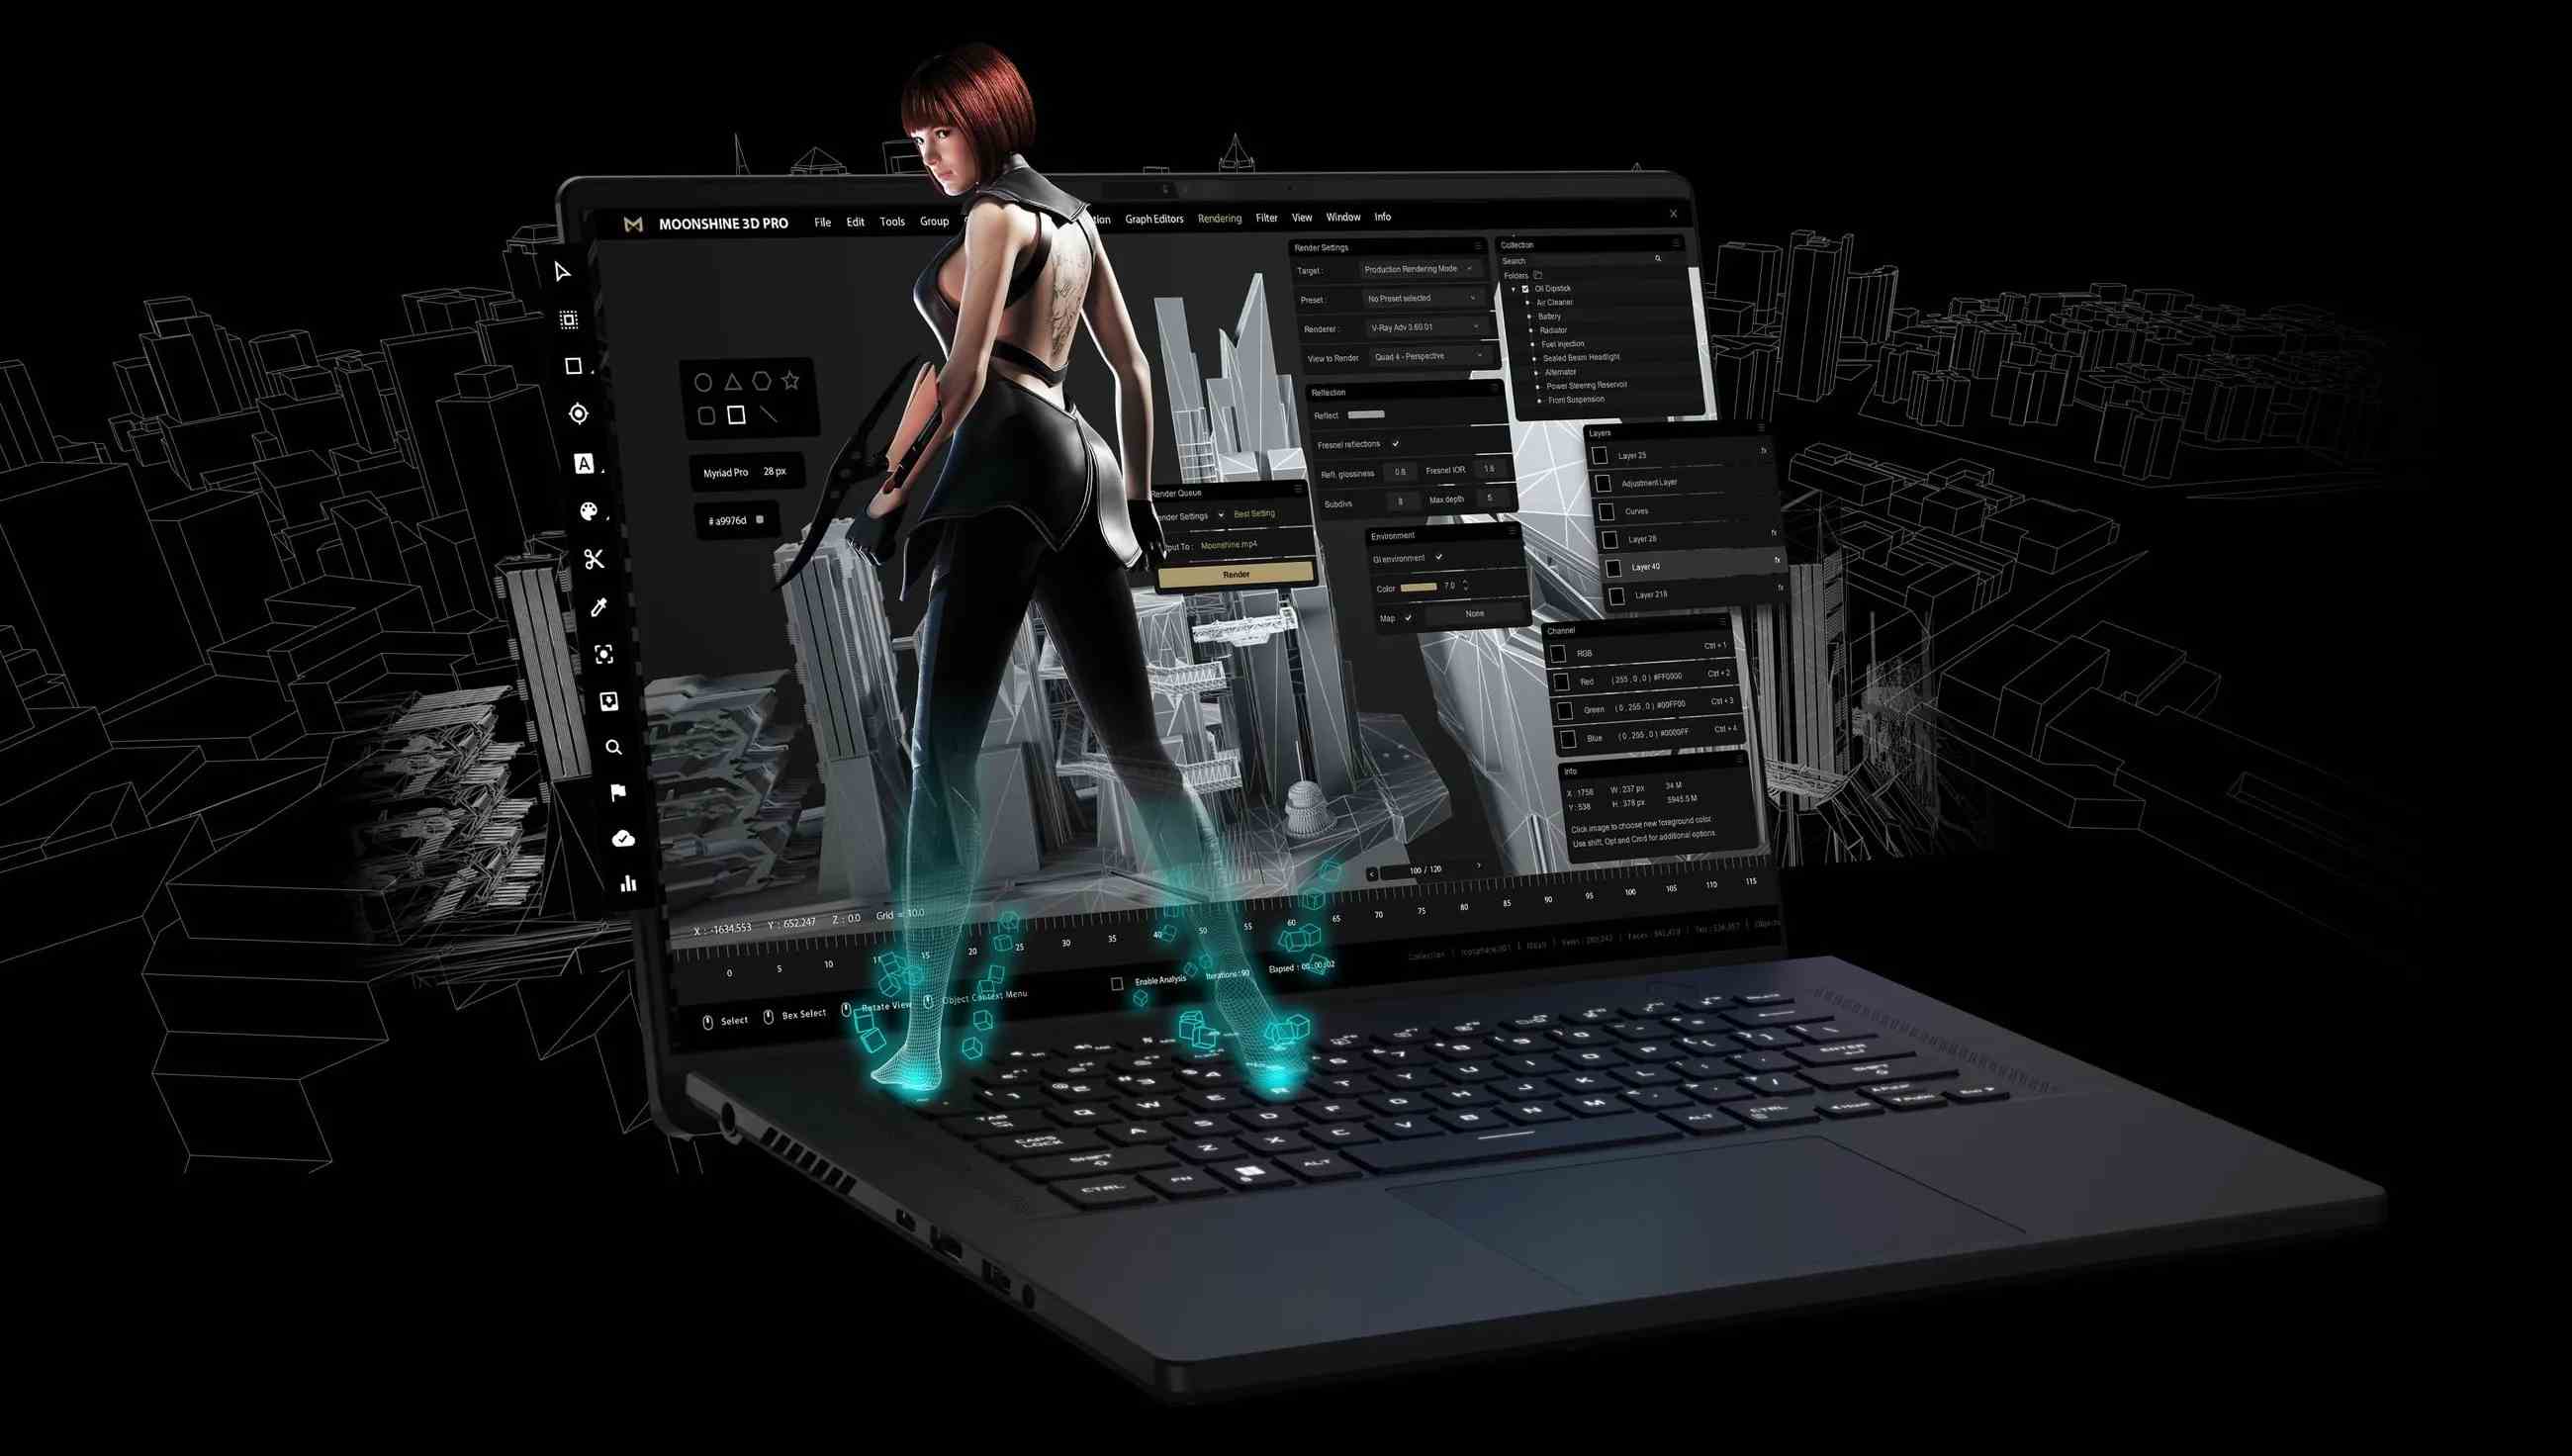 Un ordinateur portable de jeu Asus avec une femme cyberpunk stylisée debout dessus.